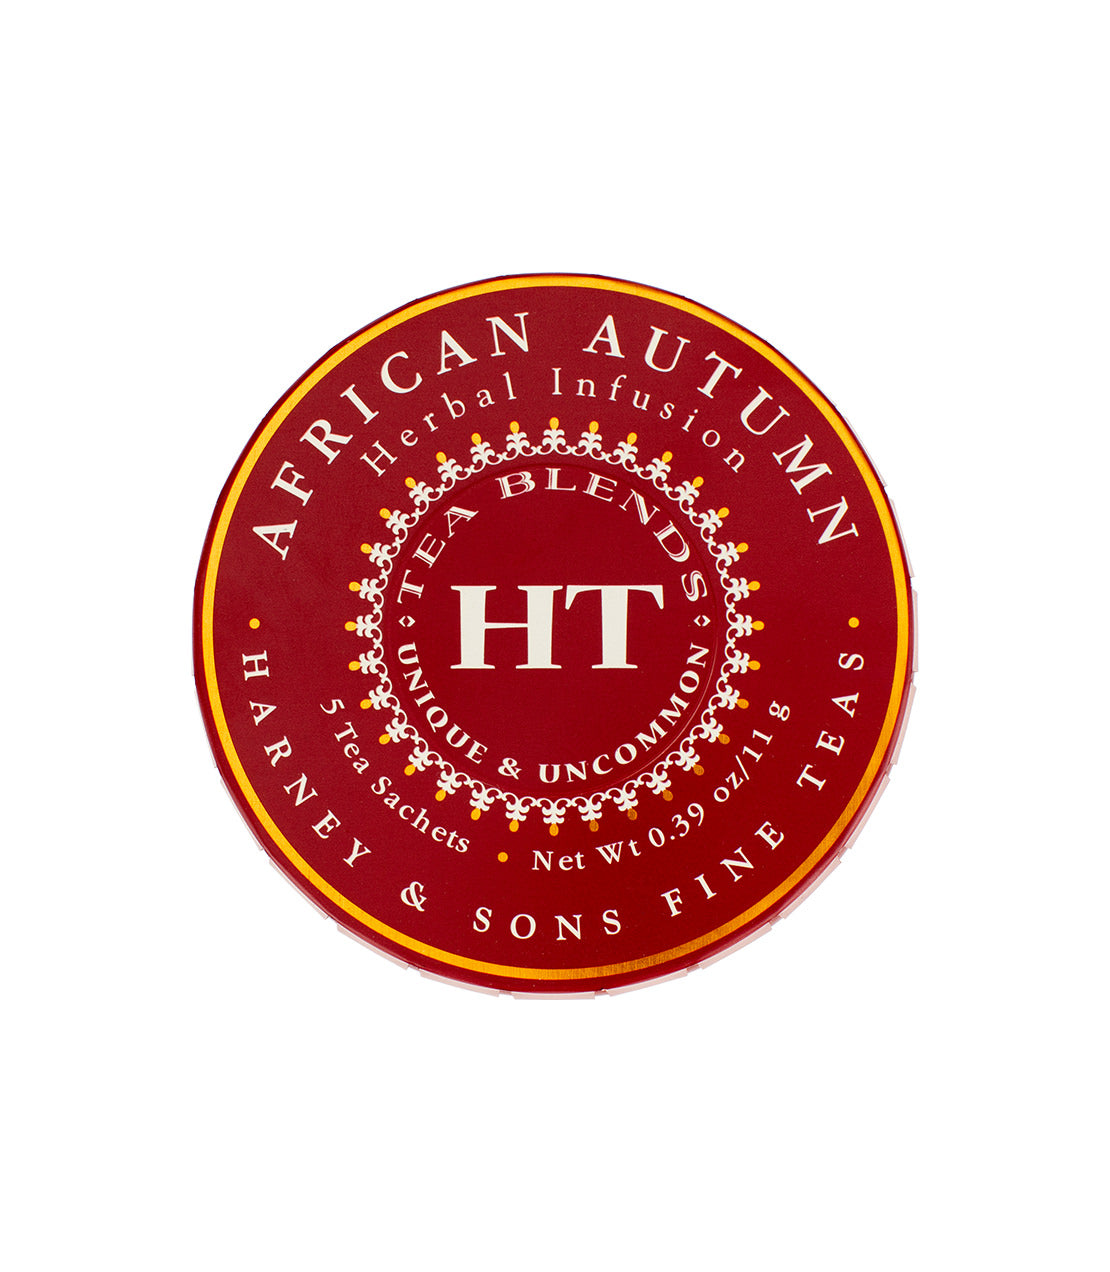 African Autumn - Sachets Tagalong Tin of 5 Sachets - Harney & Sons Fine Teas